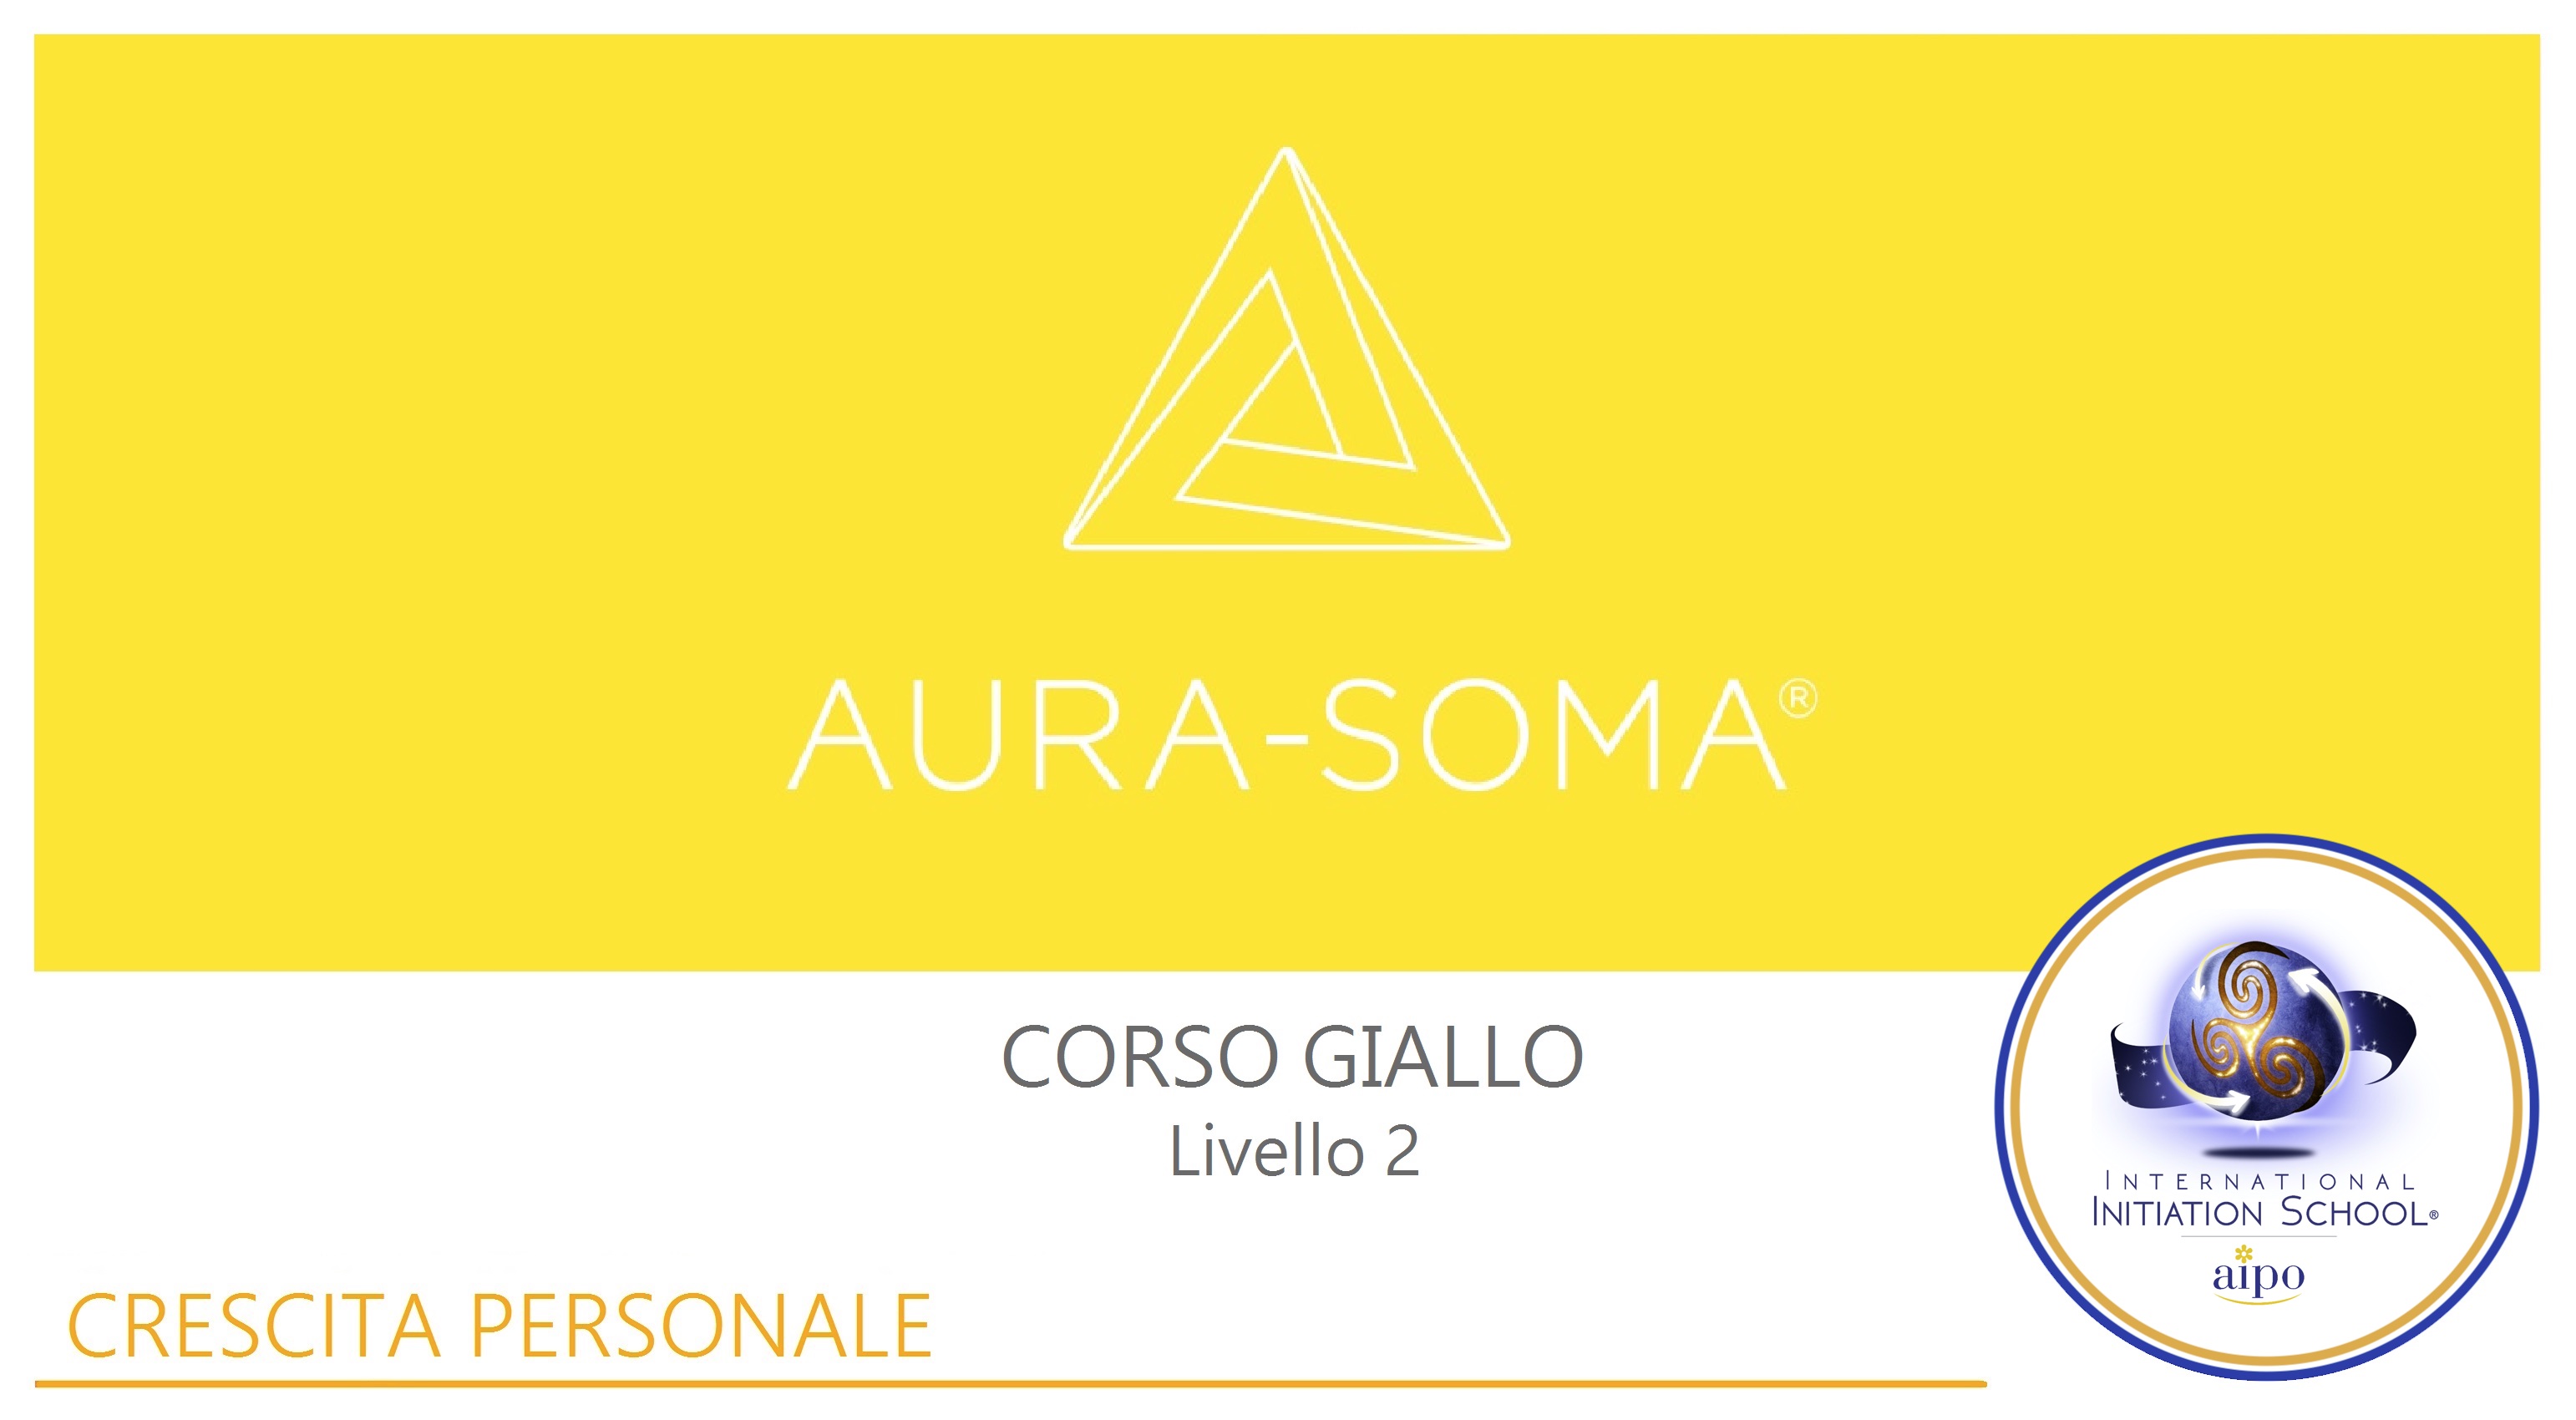 Aura-Soma® Livello 2: "Corso Giallo"